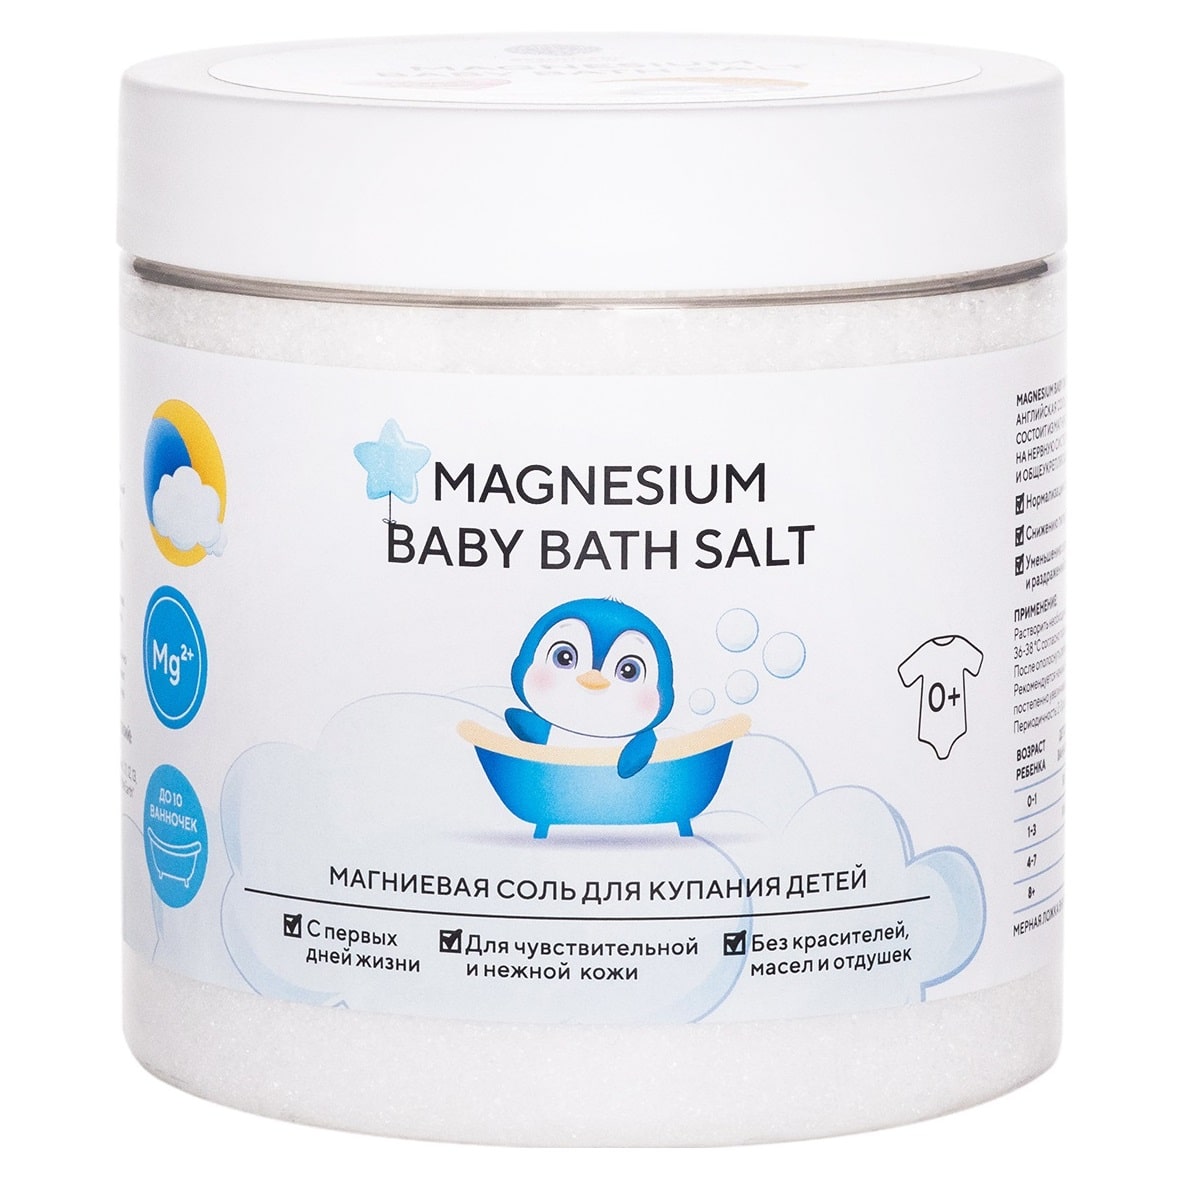 Salt of the Earth Магниевая соль для купания детей 0+ Magnes